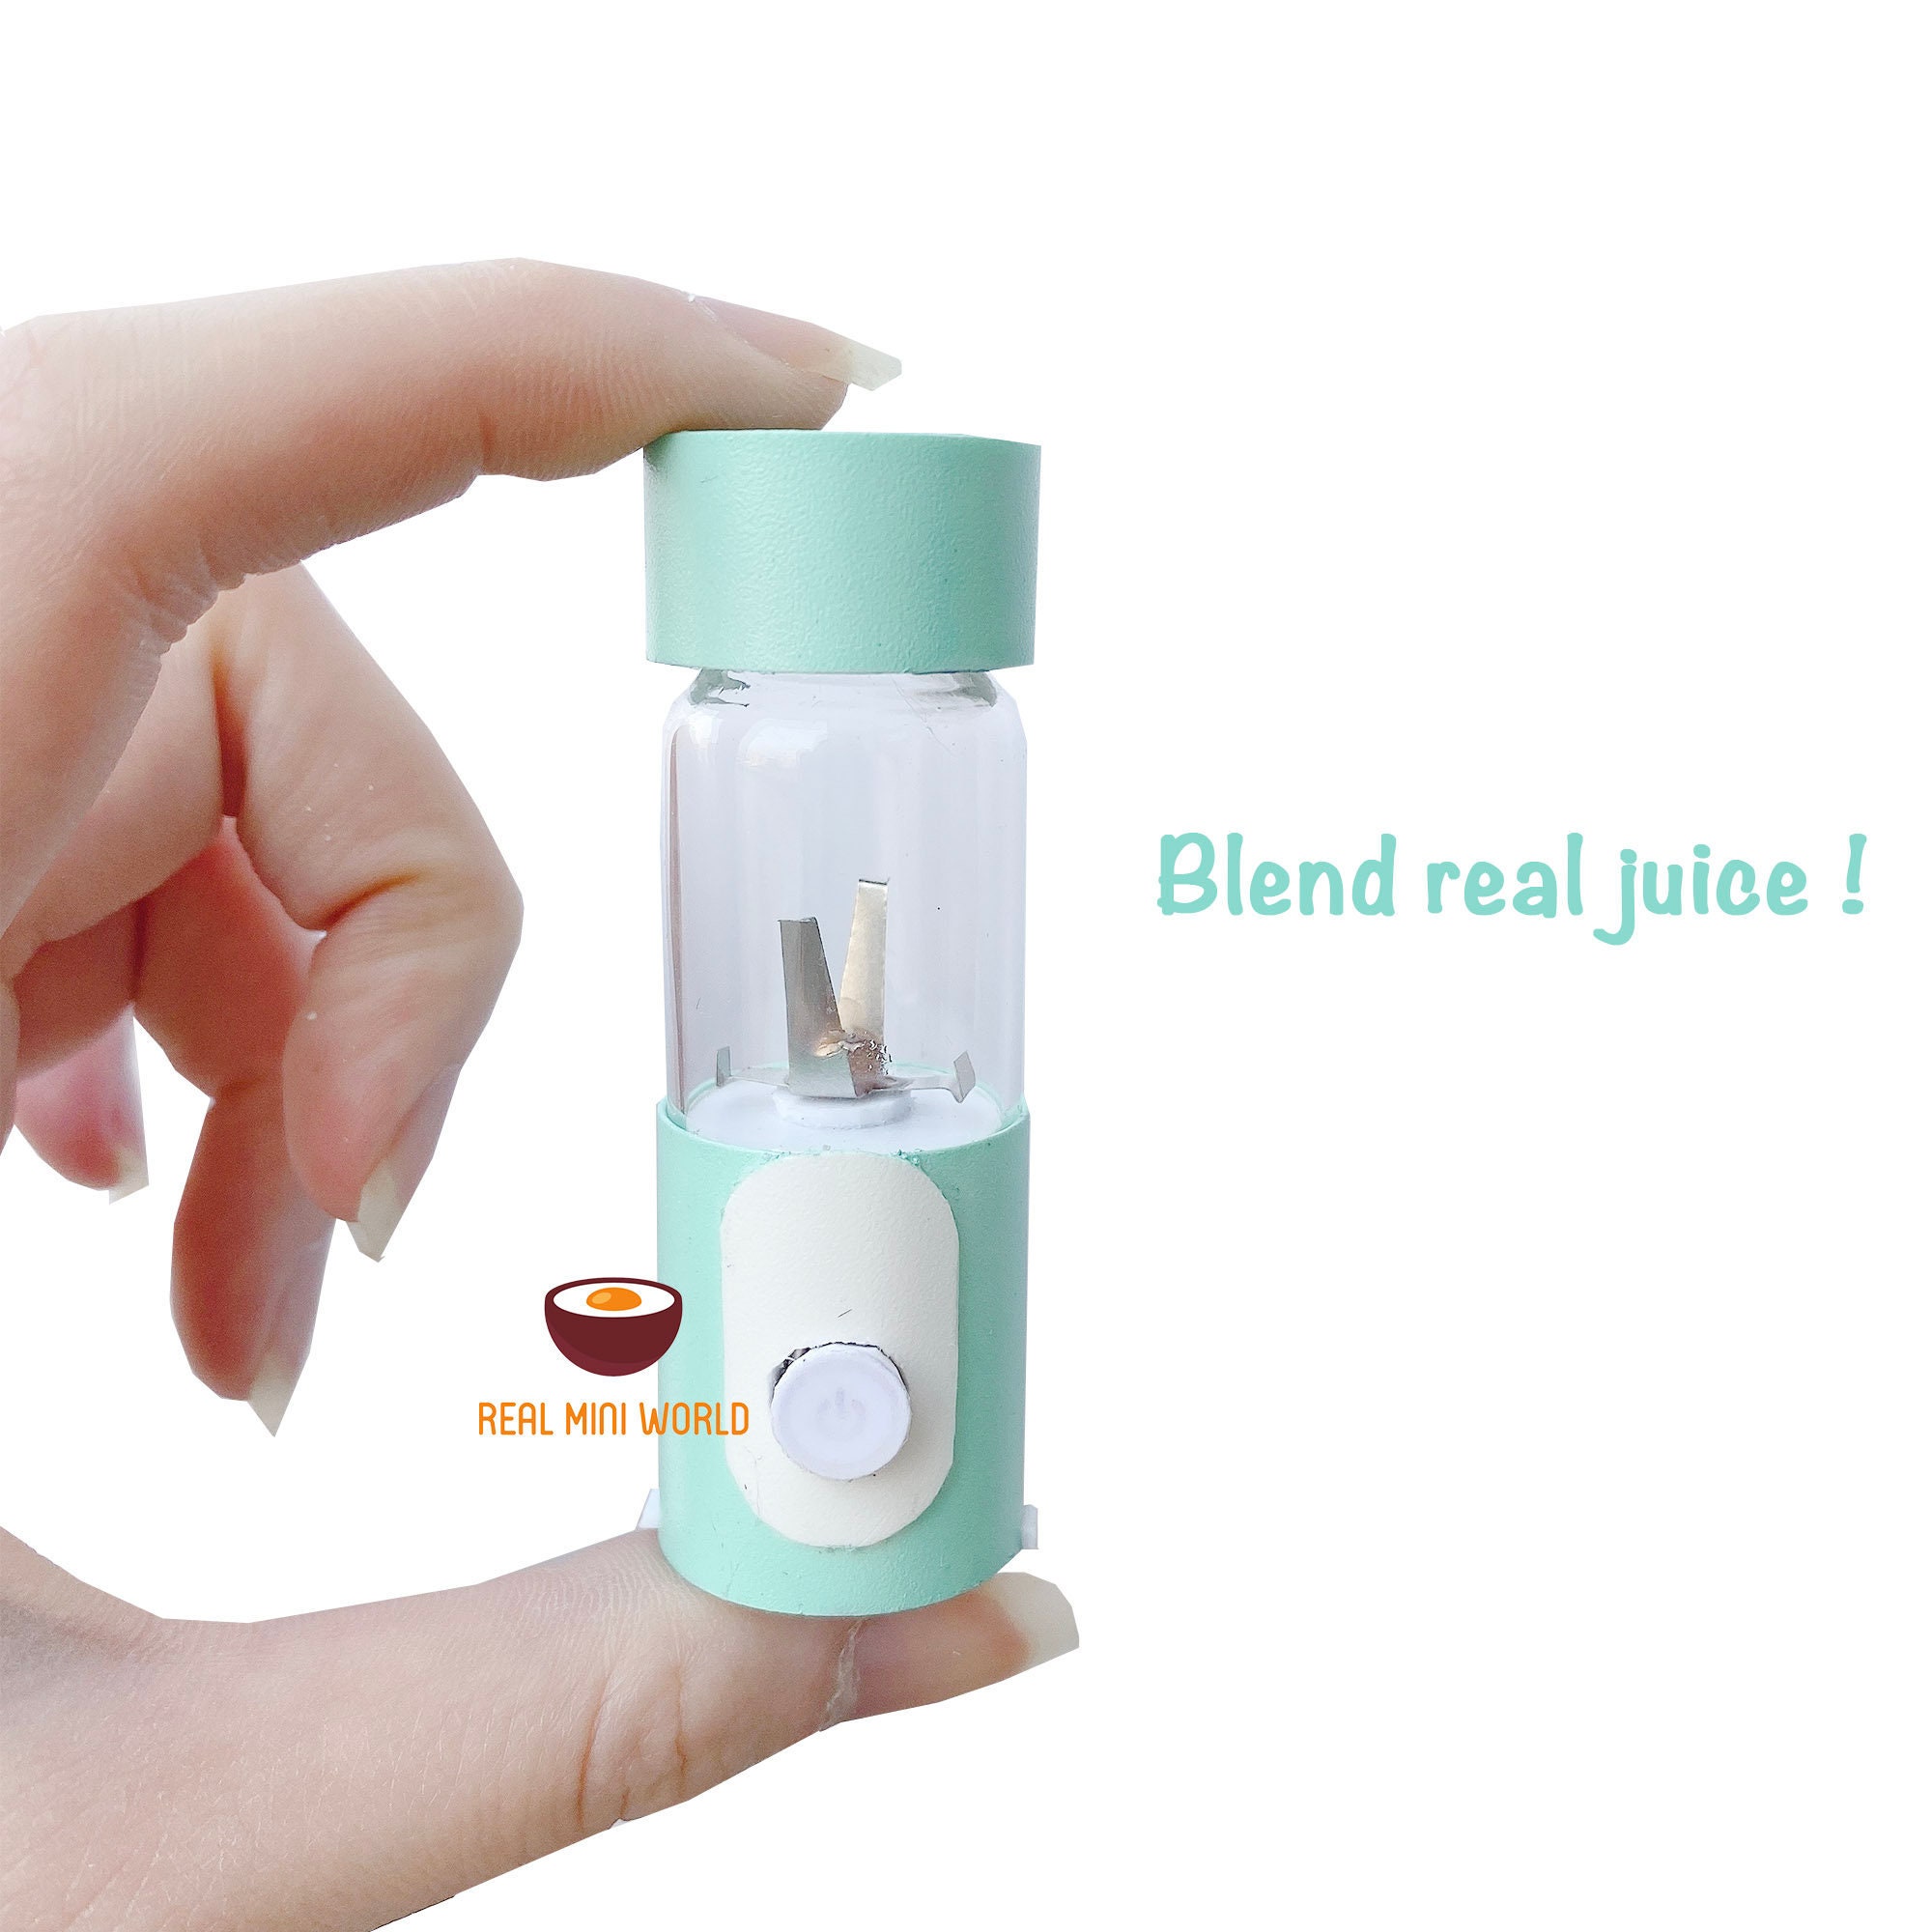 Real Working Miniature Juicer Blender Pastel Green | Can Blend Real Fruit & Vegetables